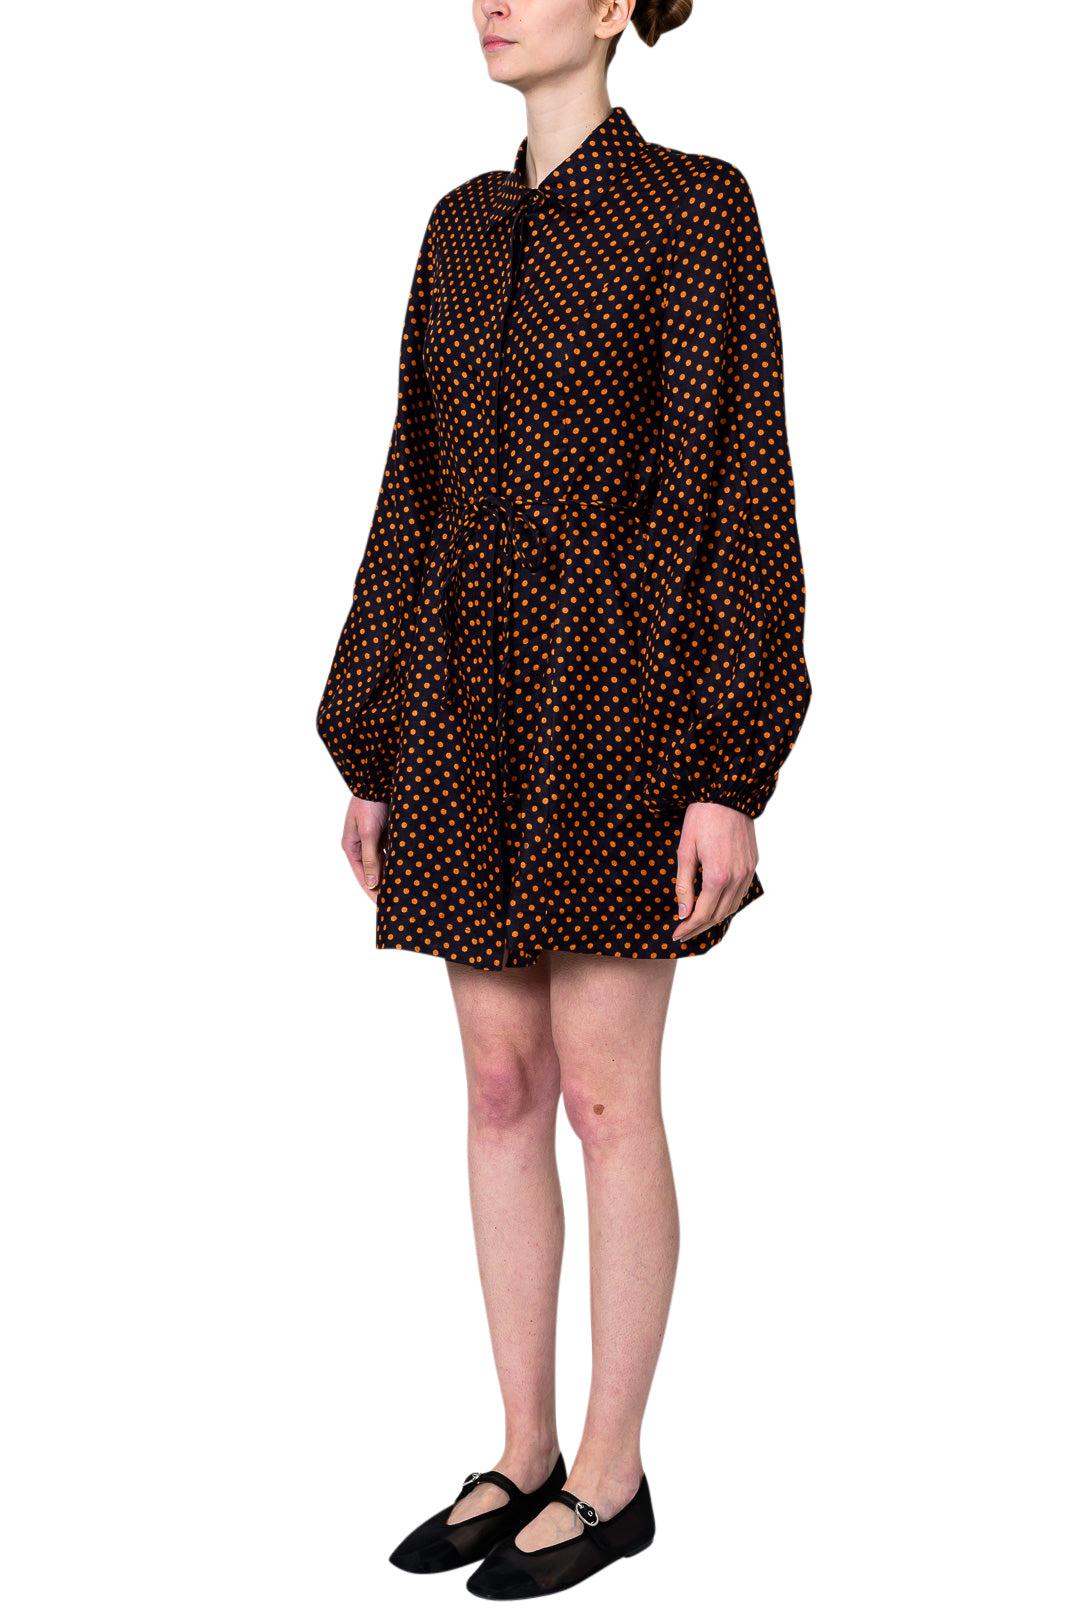 Faithfull The Brand-Rae Mini Dress Ludovica Polka Dot-dgallerystore